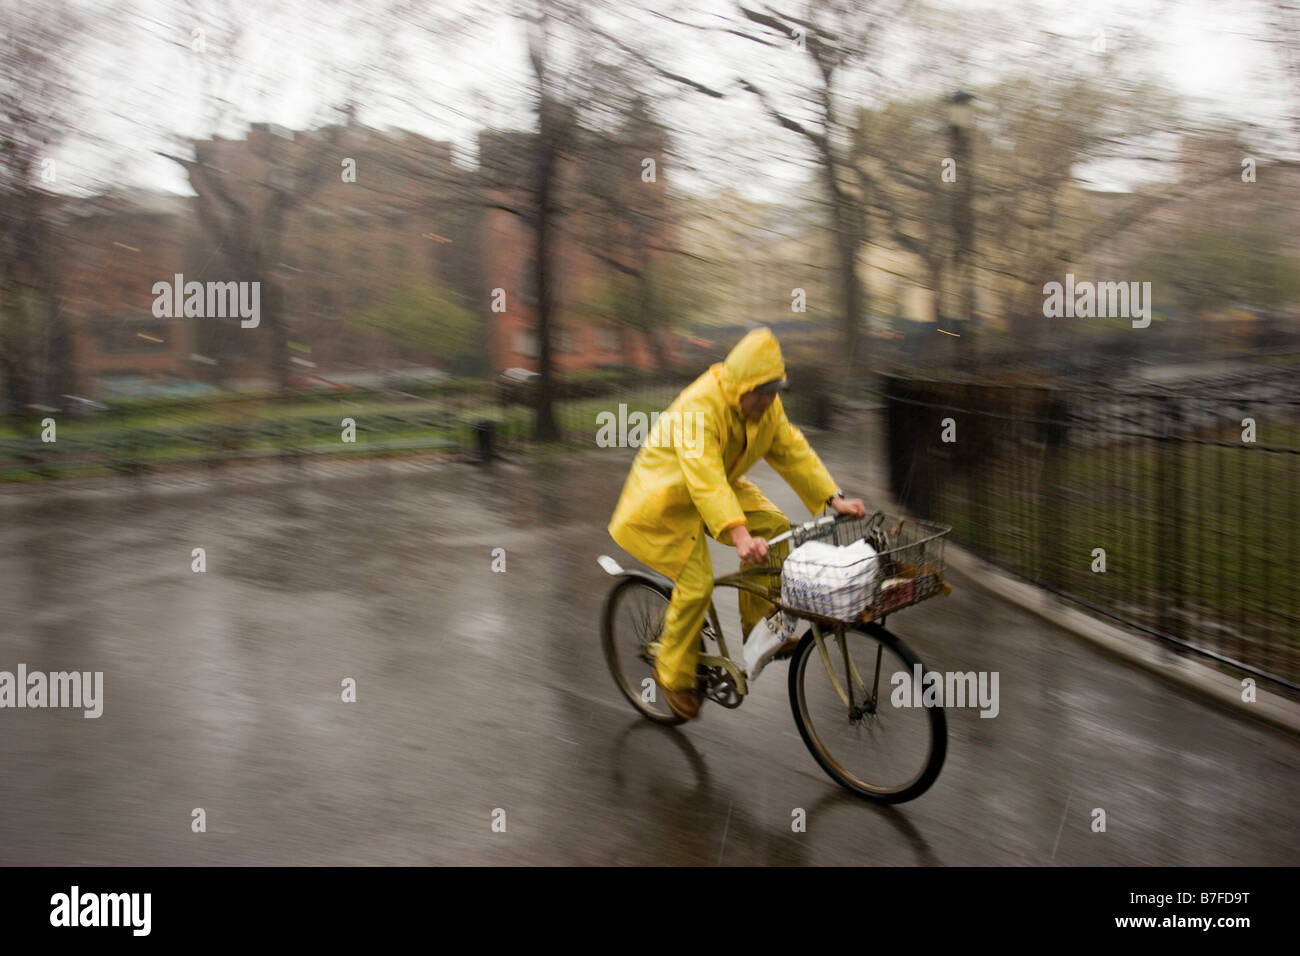 Essen-Zusteller mit dem Fahrrad im Regen tragen eine vollständige gelbe  Regenanzug. Bilder hat Bewegungsunschärfe Stockfotografie - Alamy